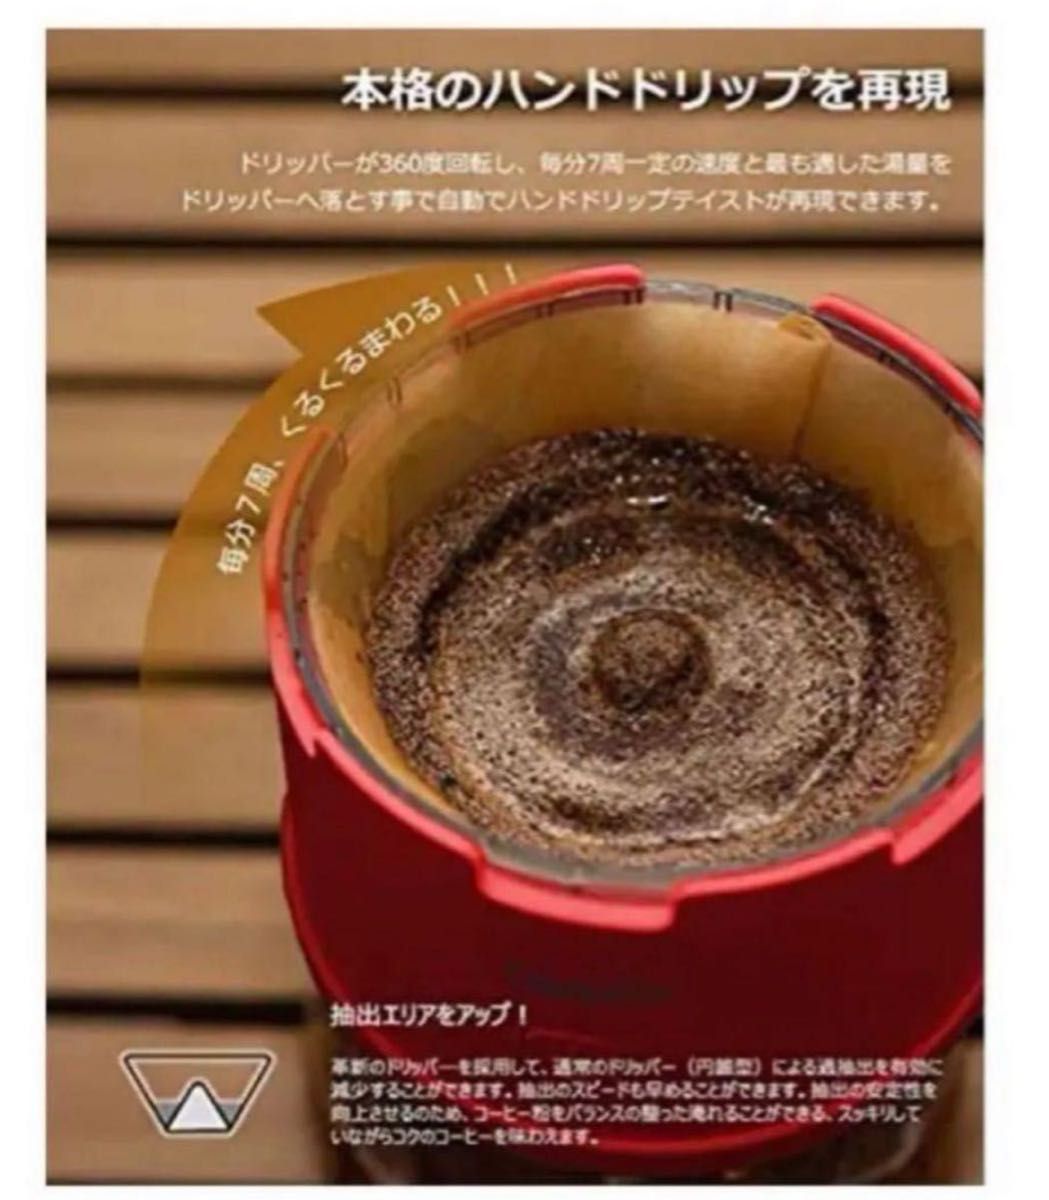 コーヒーメーカー 自動ドリップ式 350ml大容量 折り畳み式/コンパクト